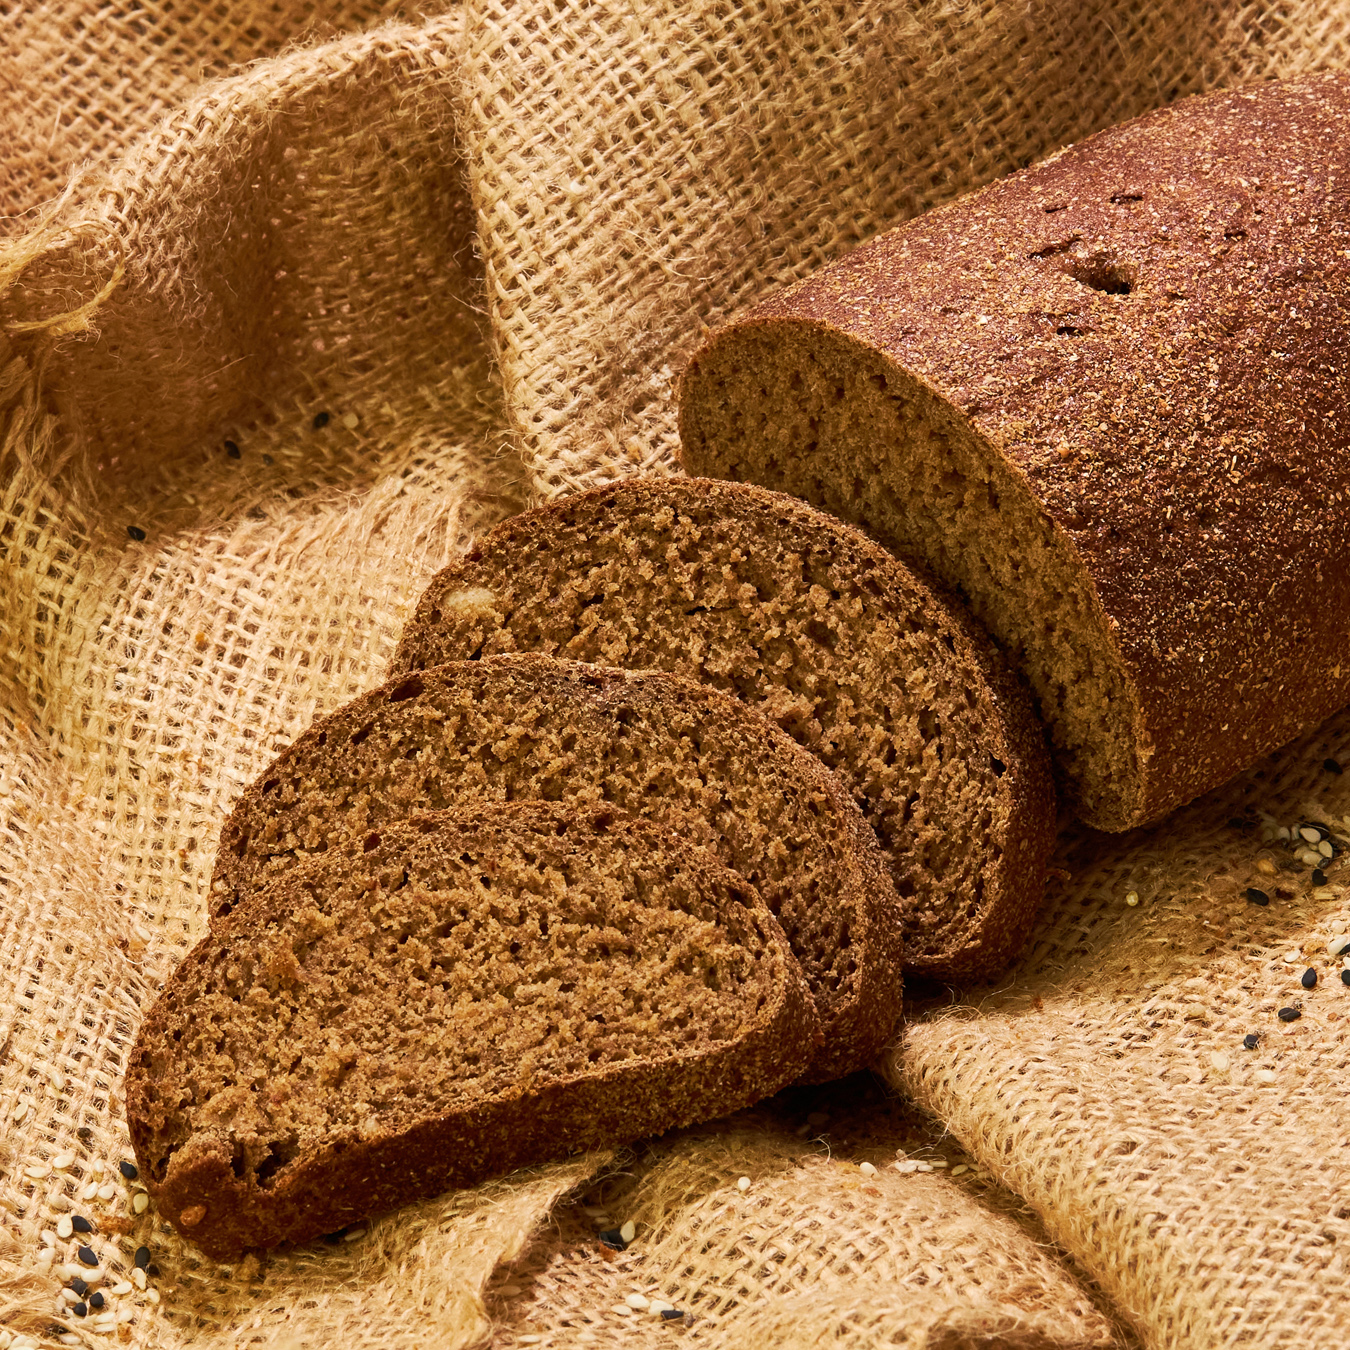 Rye bread with bran 350g 3